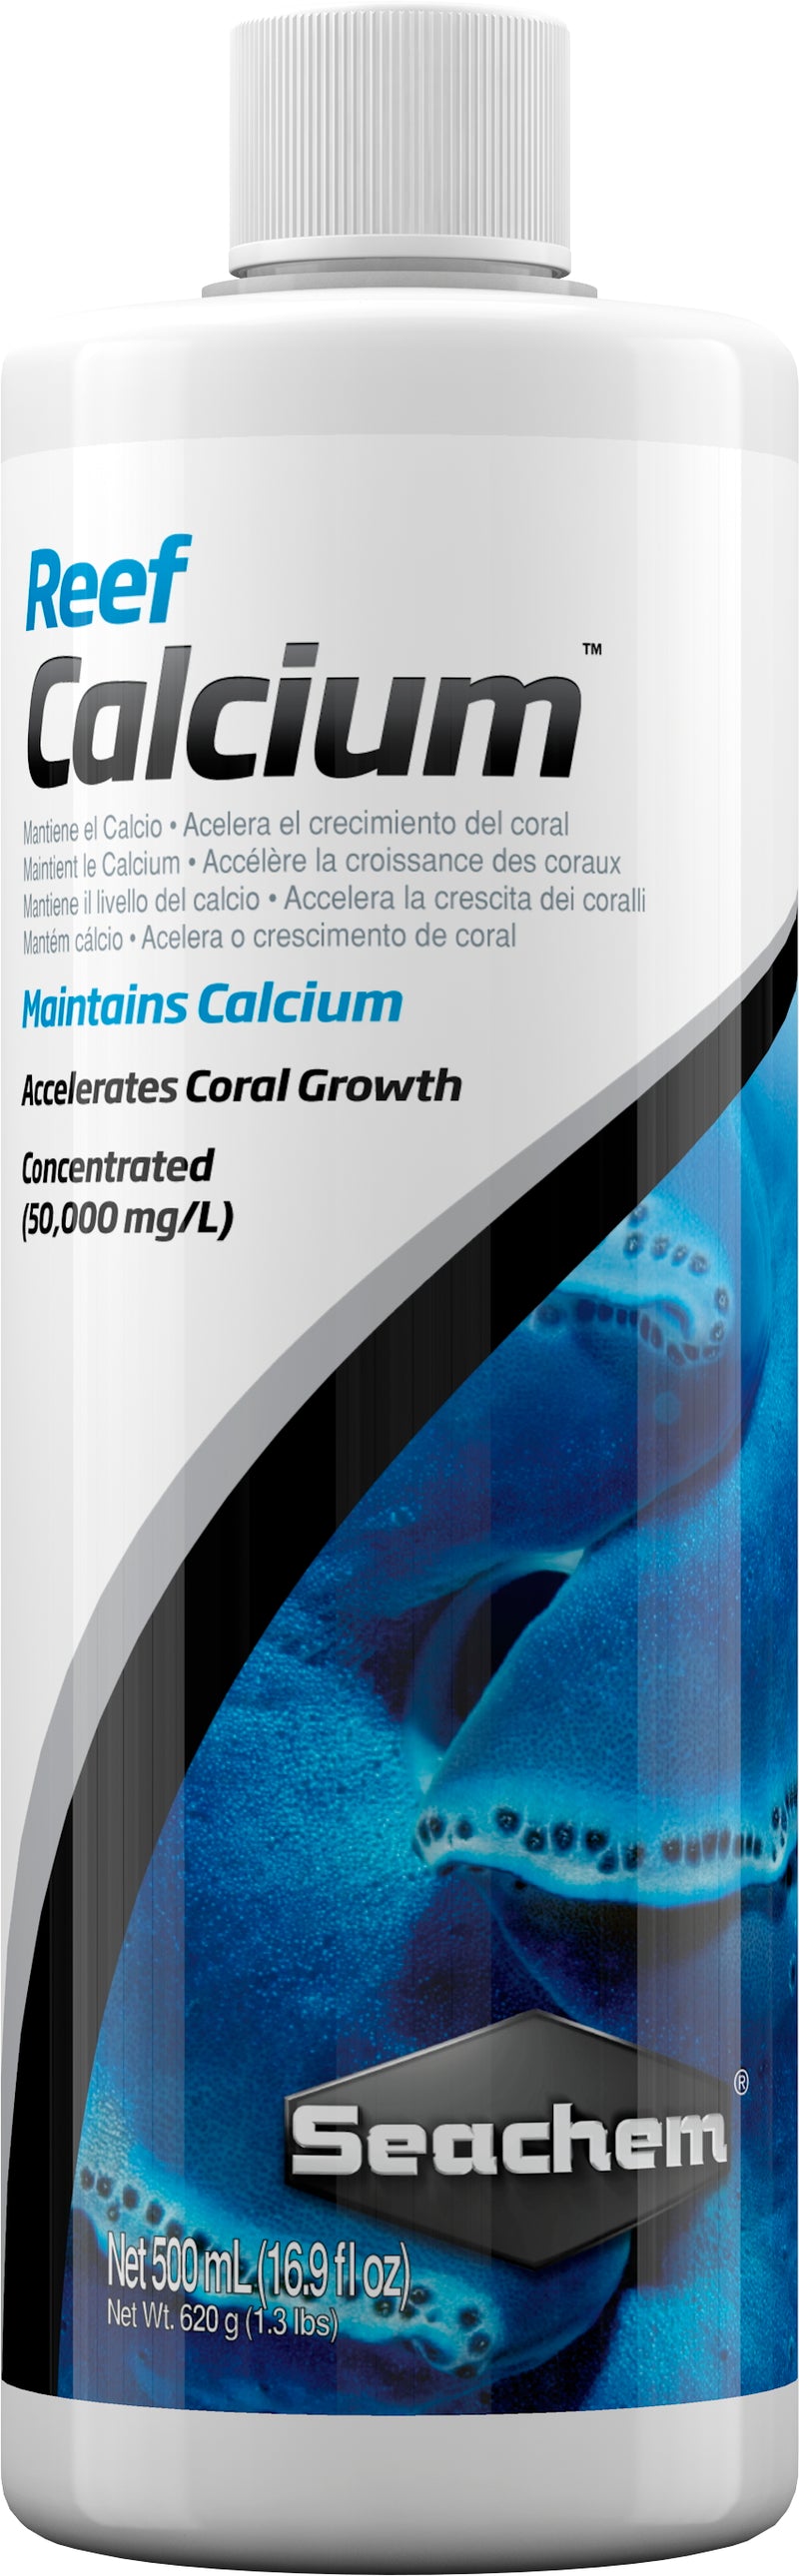 Seachem Reef Calcium - 250 ml